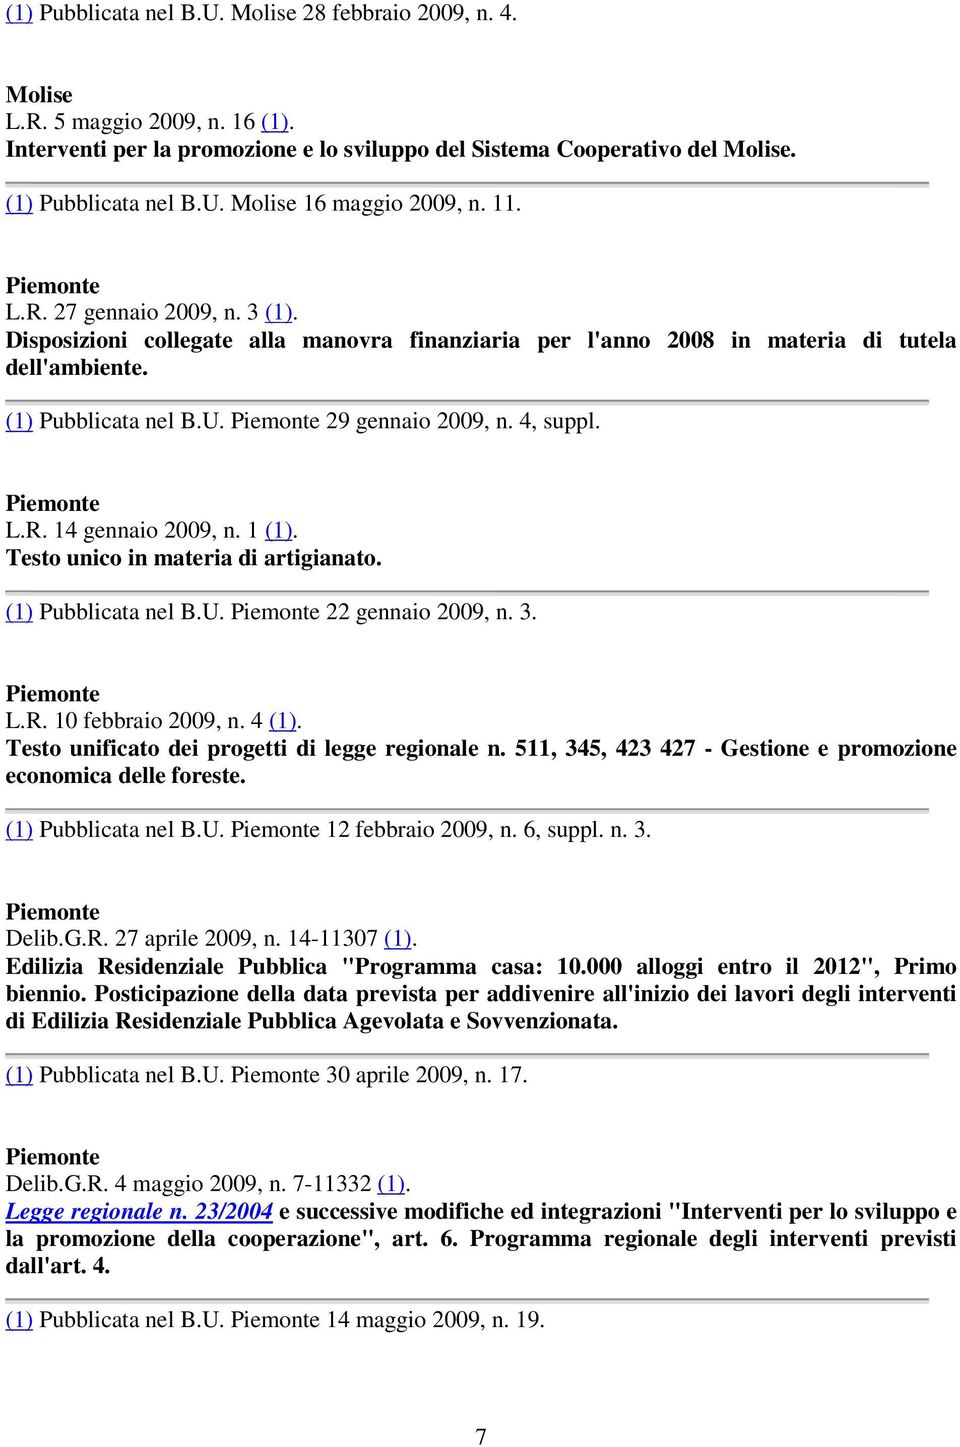 4, suppl. Piemonte L.R. 14 gennaio 2009, n. 1 (1). Testo unico in materia di artigianato. (1) Pubblicata nel B.U. Piemonte 22 gennaio 2009, n. 3. Piemonte L.R. 10 febbraio 2009, n. 4 (1).